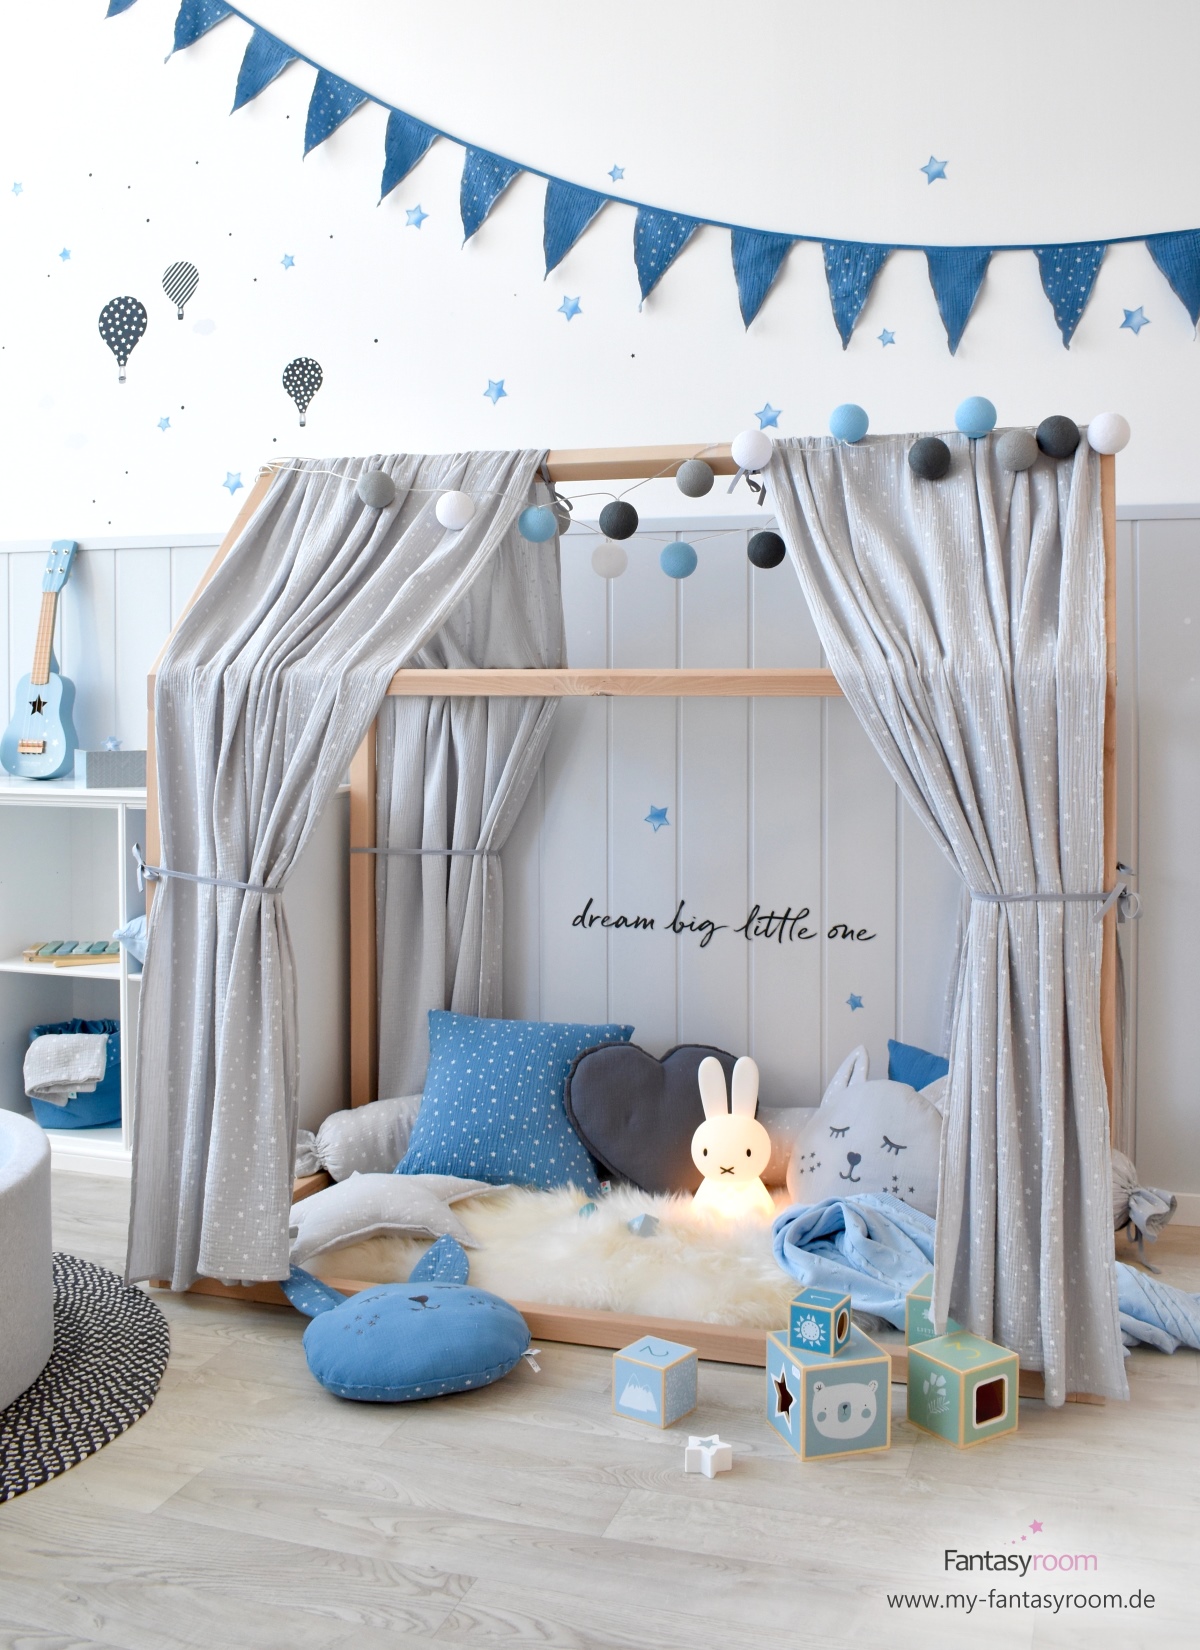 Kinderzimmer mit Hausbett und Dinki Balloon Musselin Textilien in Blau und Grau